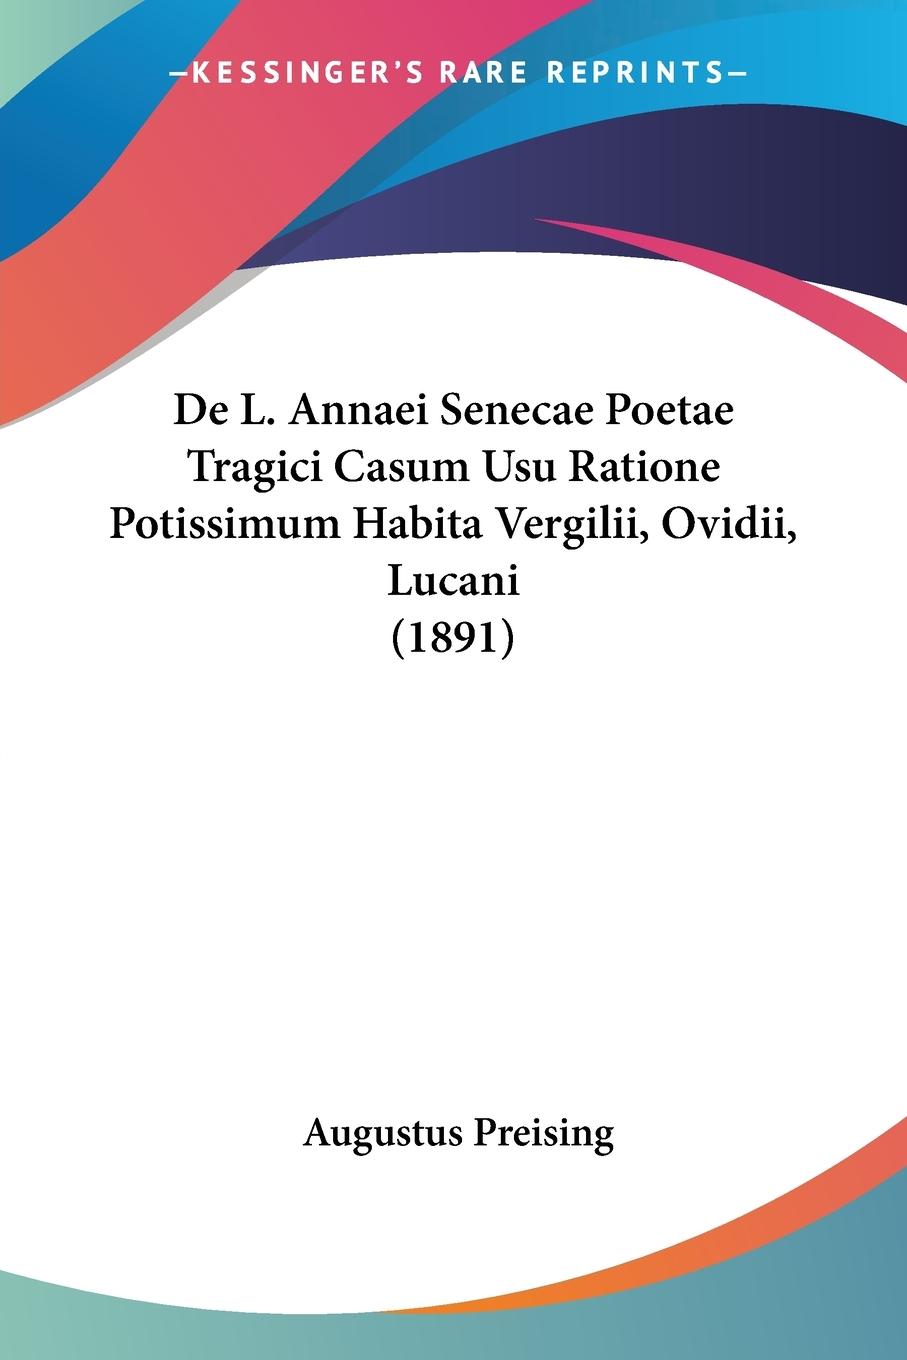 De L. Annaei Senecae Poetae Tragici Casum Usu Ratione Potissimum Habita Vergilii, Ovidii, Lucani (1891) - Preising, Augustus